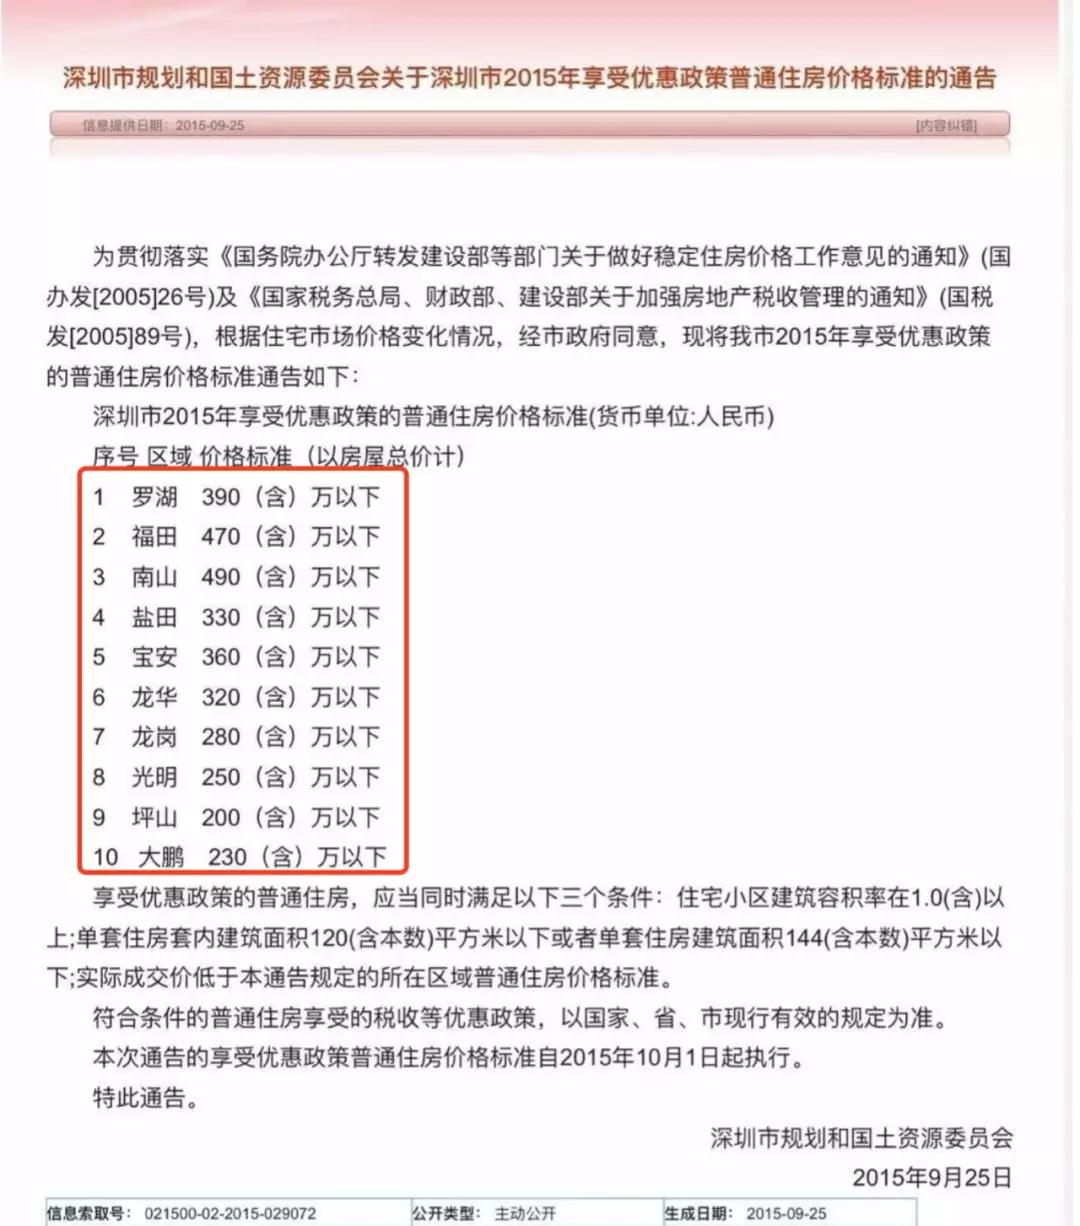 经过致电深圳税务热线12366求证